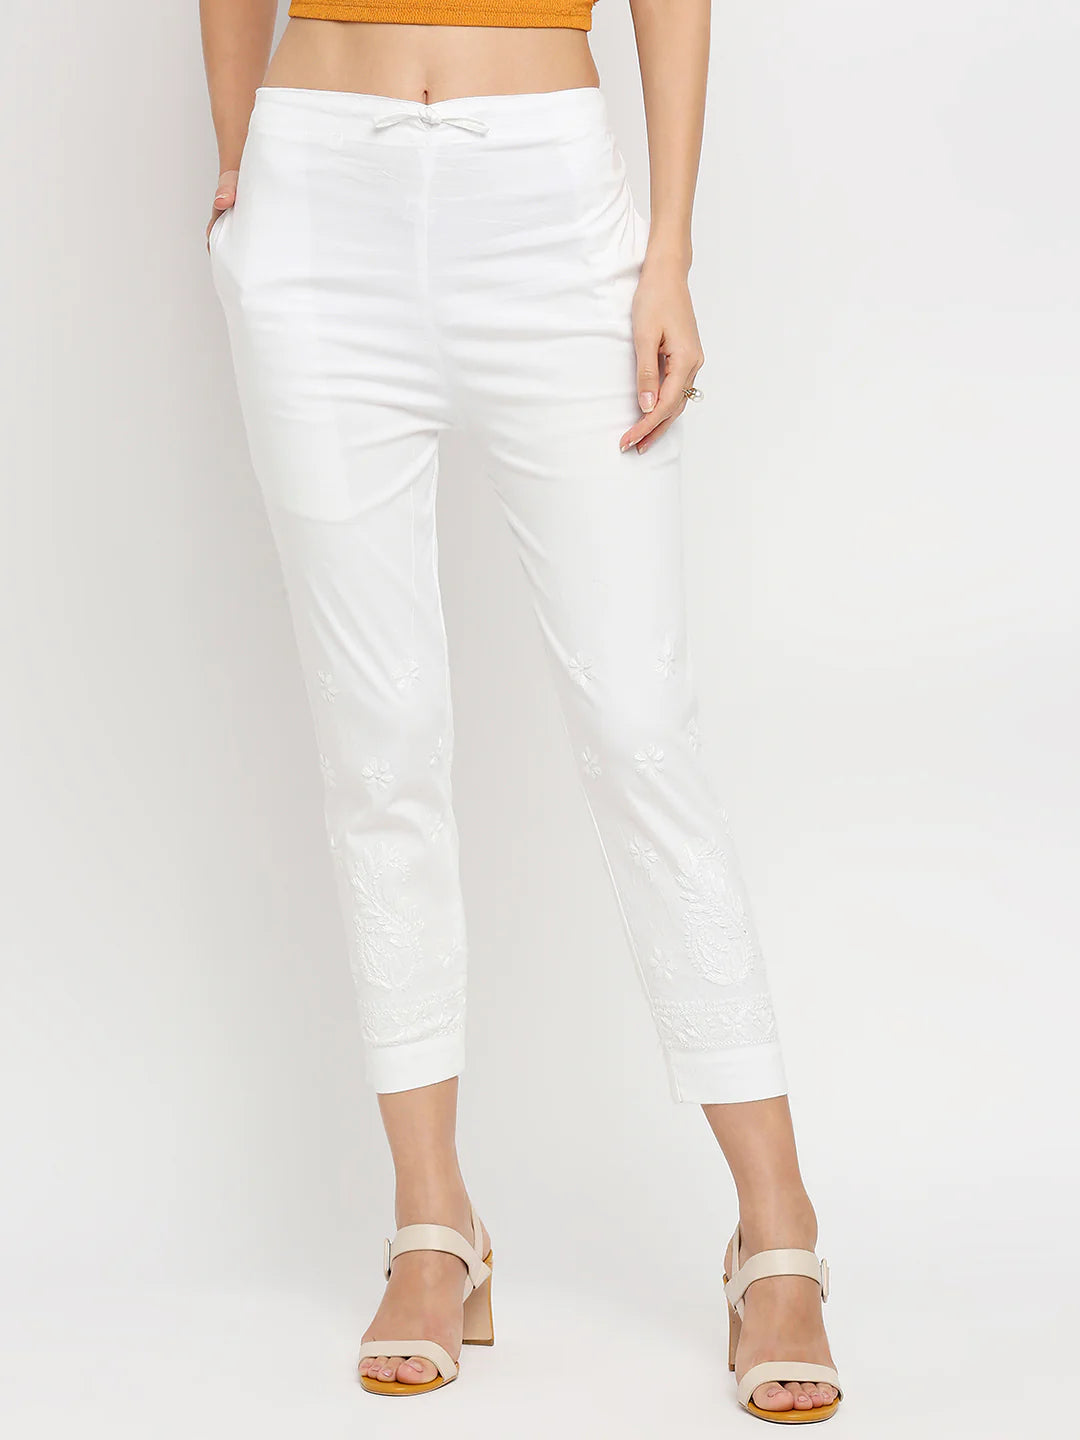 Buy Select Chikankari Women's Regular Fit Cigarette Pant White at Amazon.in